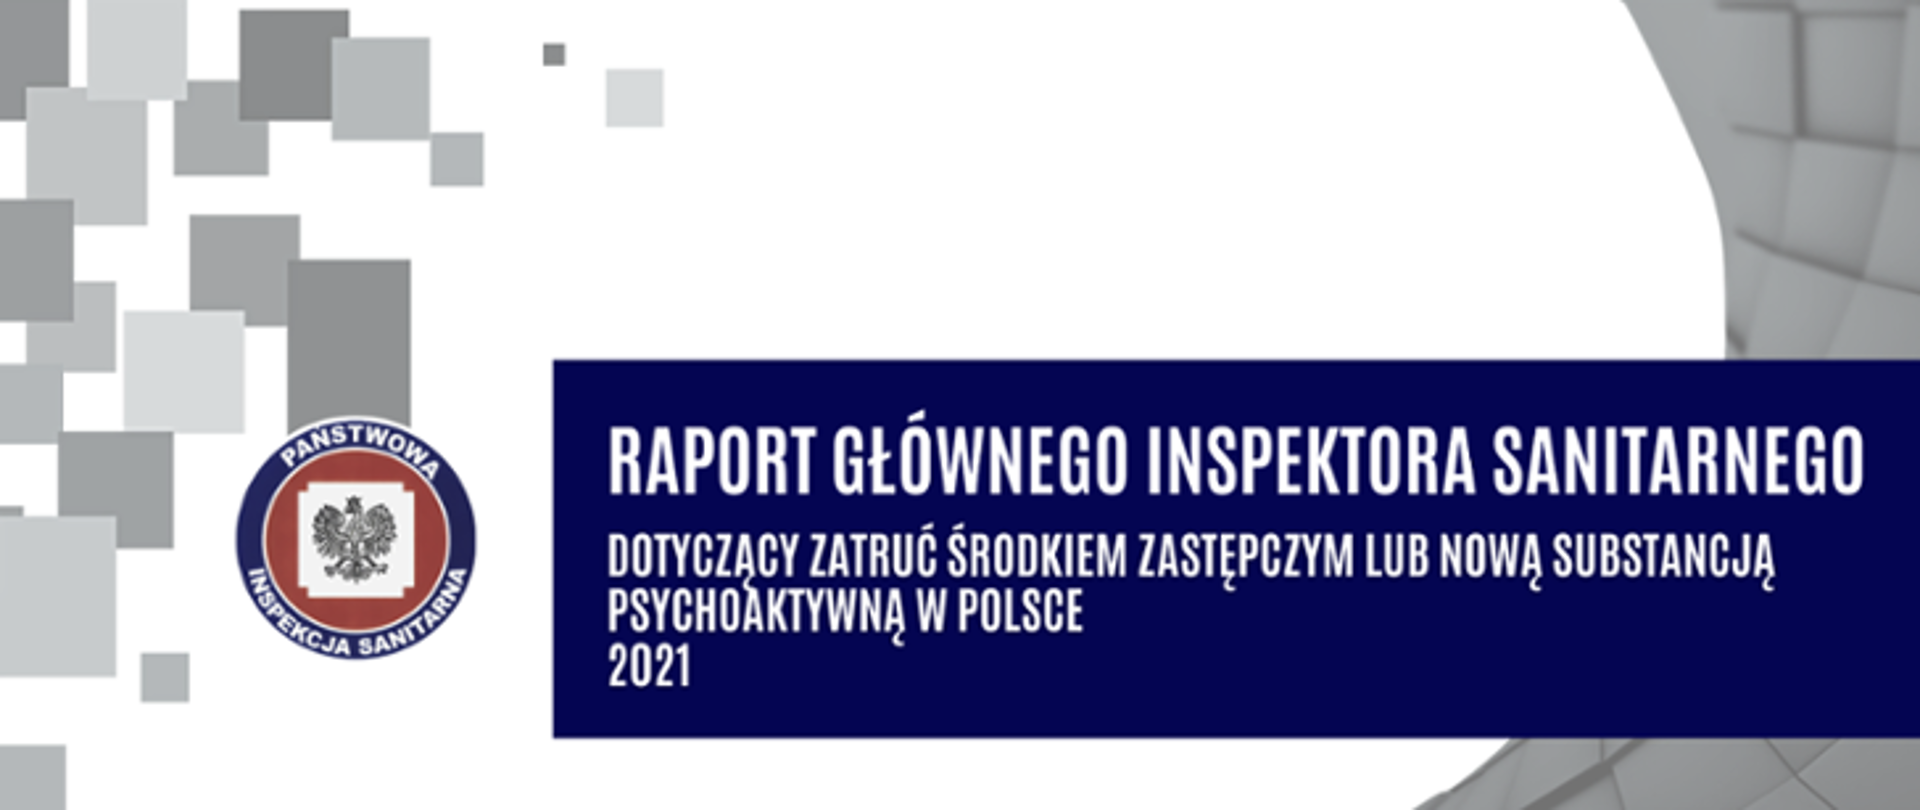 ilustracja szaro-biało-granatowa, w prostokącie z lewej strony logo PIS, na granatowym pasku napis Raport Głównego Inspektora Sanitarnego dotyczący zatruć środkiem zastępczym lub nową substancją psychoaktywną w Polsce 2021